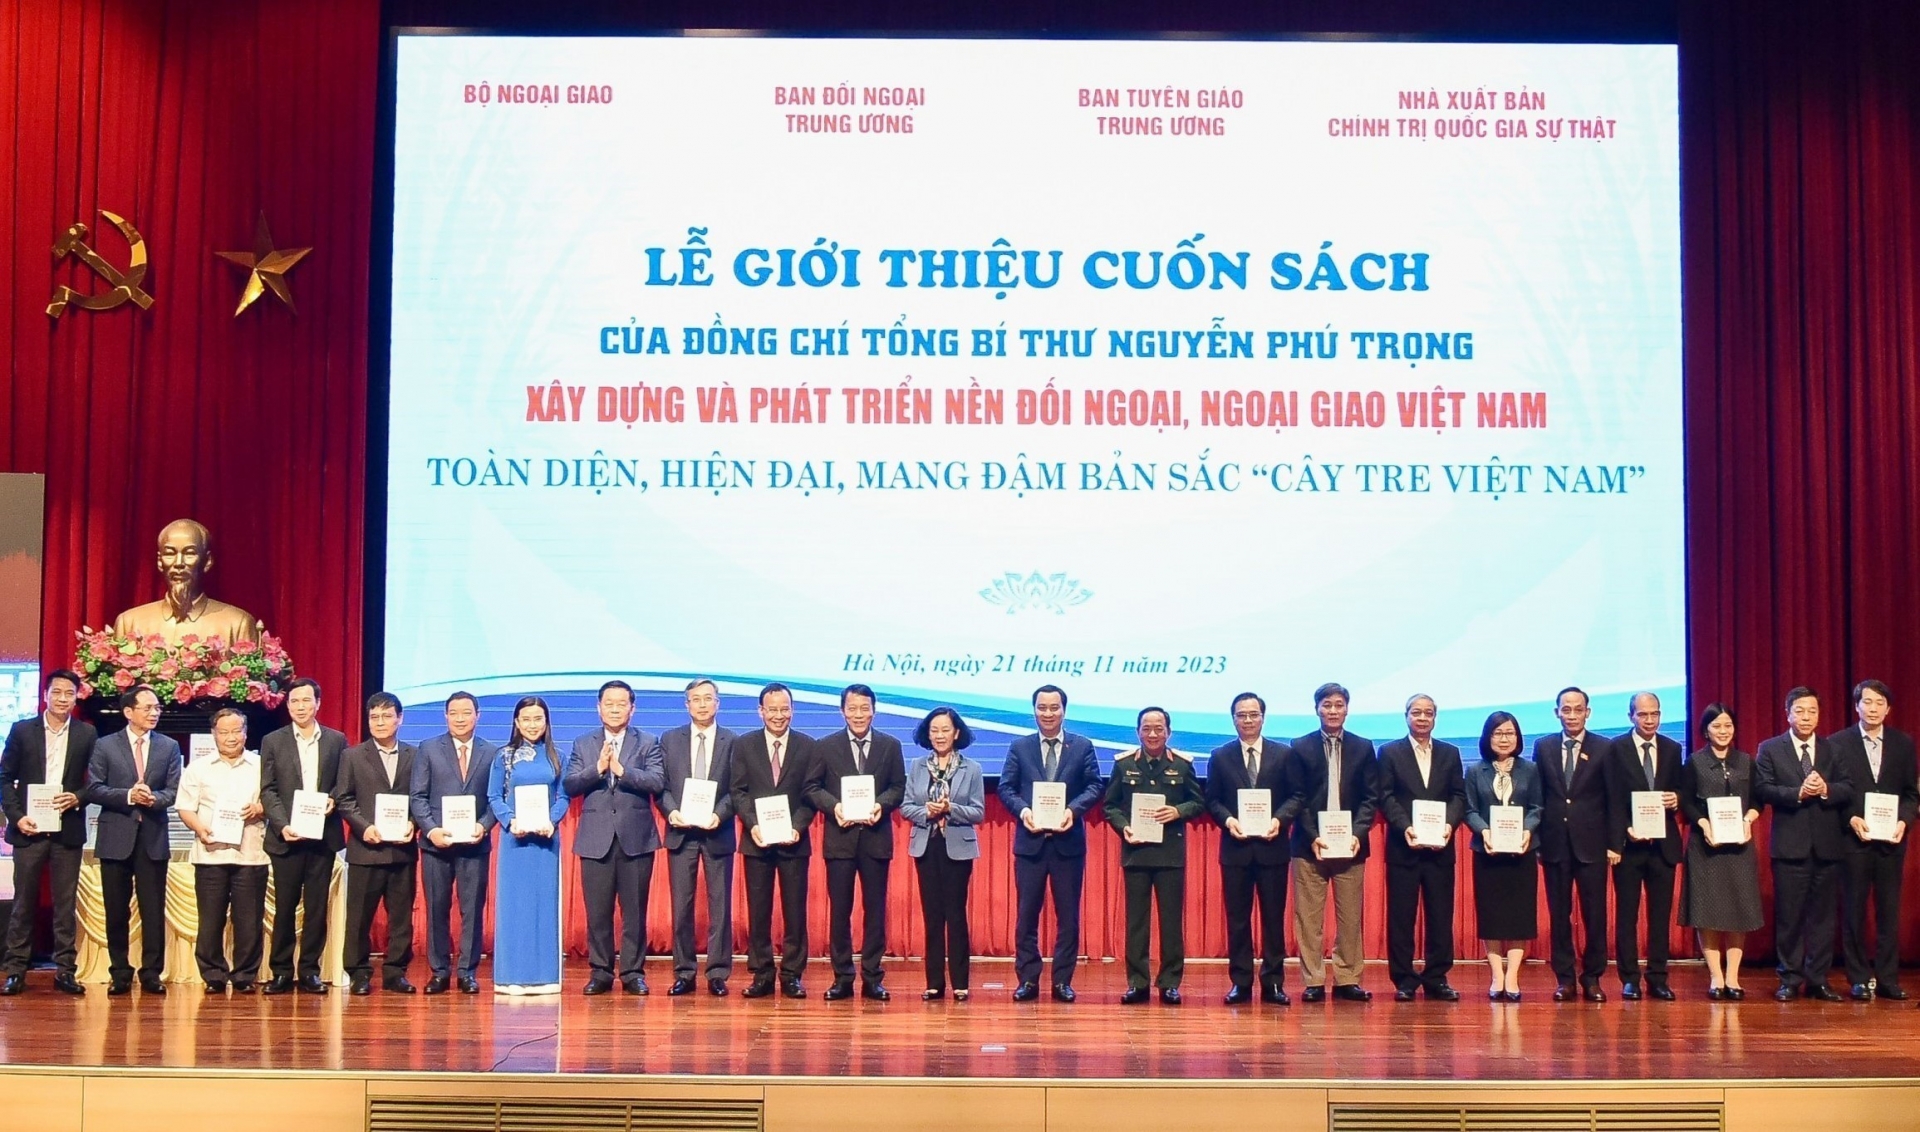 越共中央总书记阮富仲撰写的《建设和发展富有“越南竹子”特色的全面现代对外和外交事业》一书问世仪式于11月21日在河内举行。